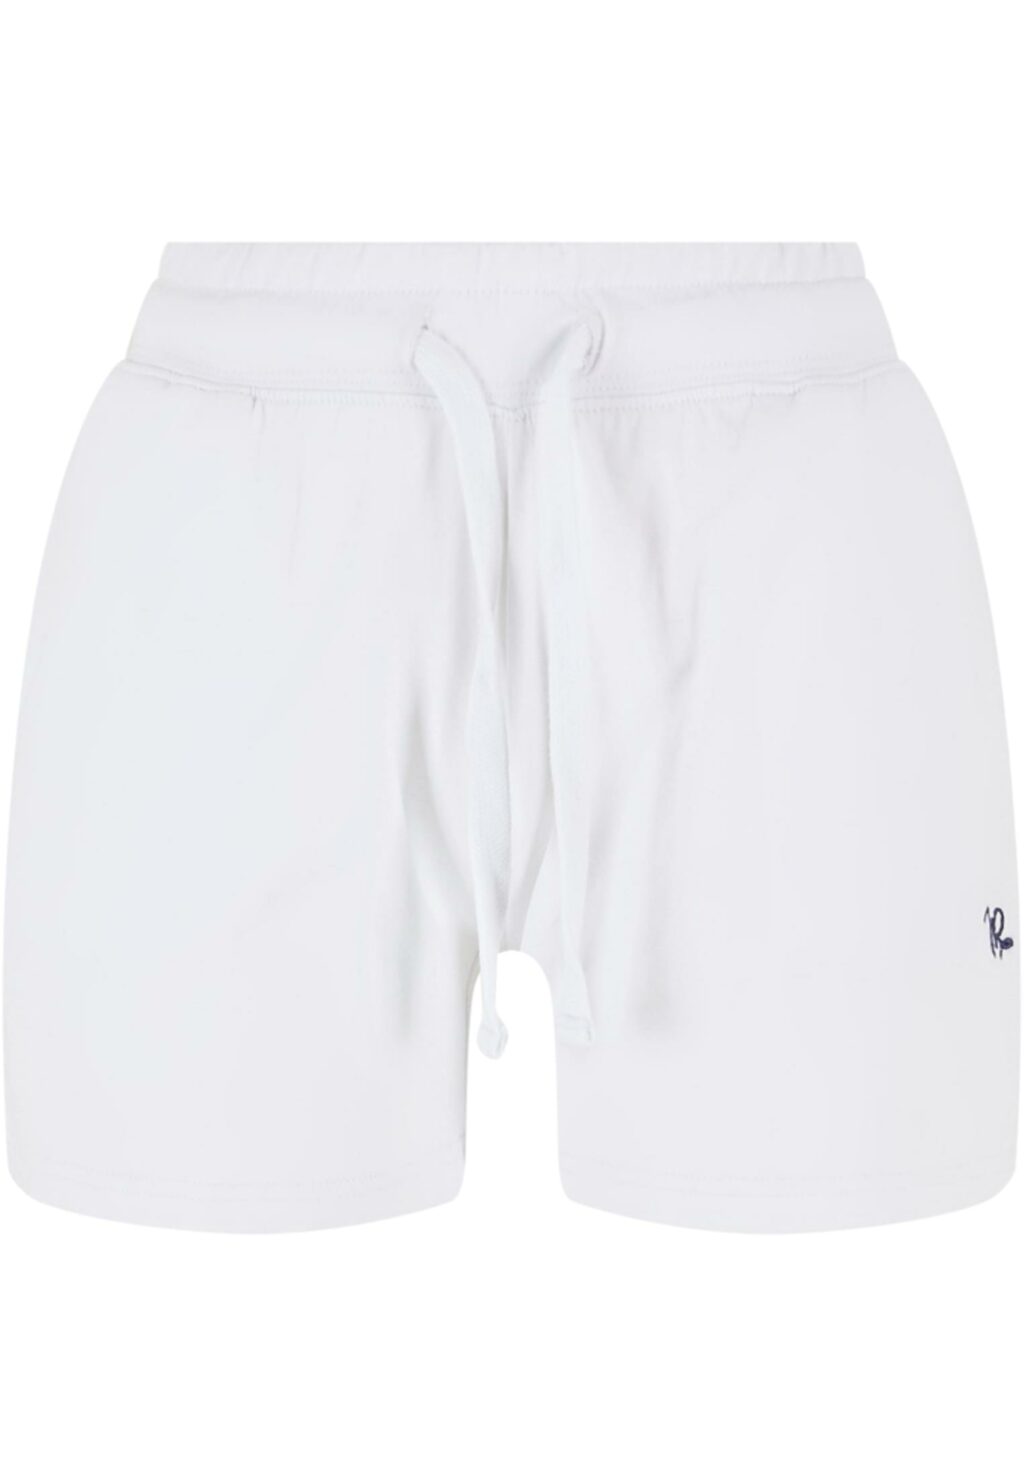 Debaras Shorts white JLSH209